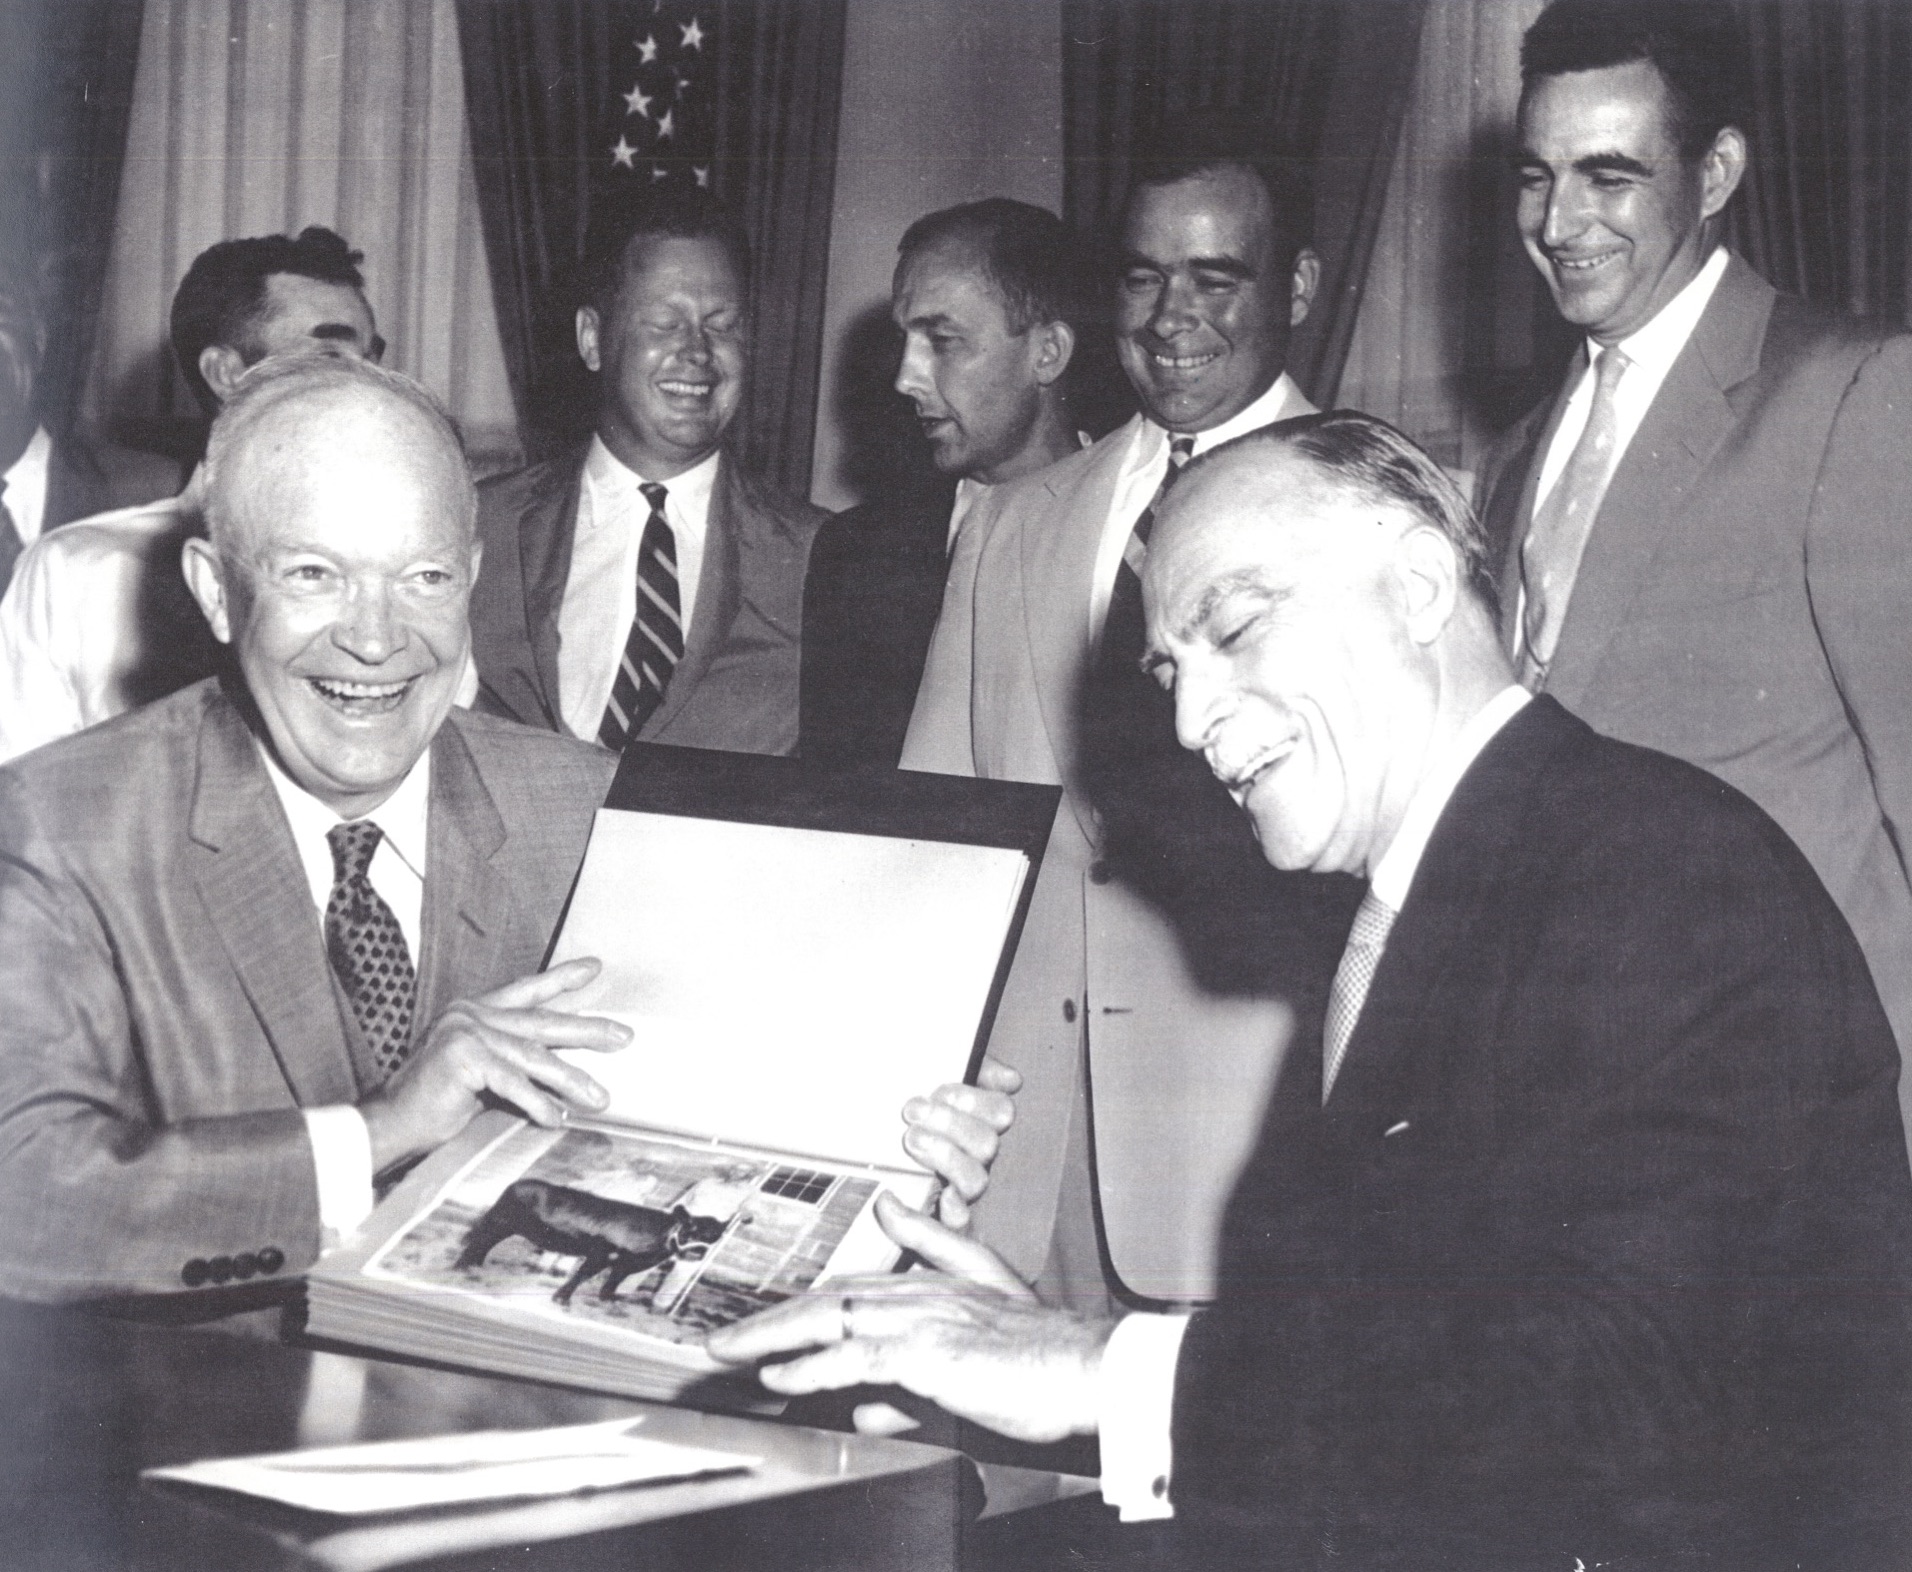 President Eisenhower celebrates donating to Heifer in 1957.